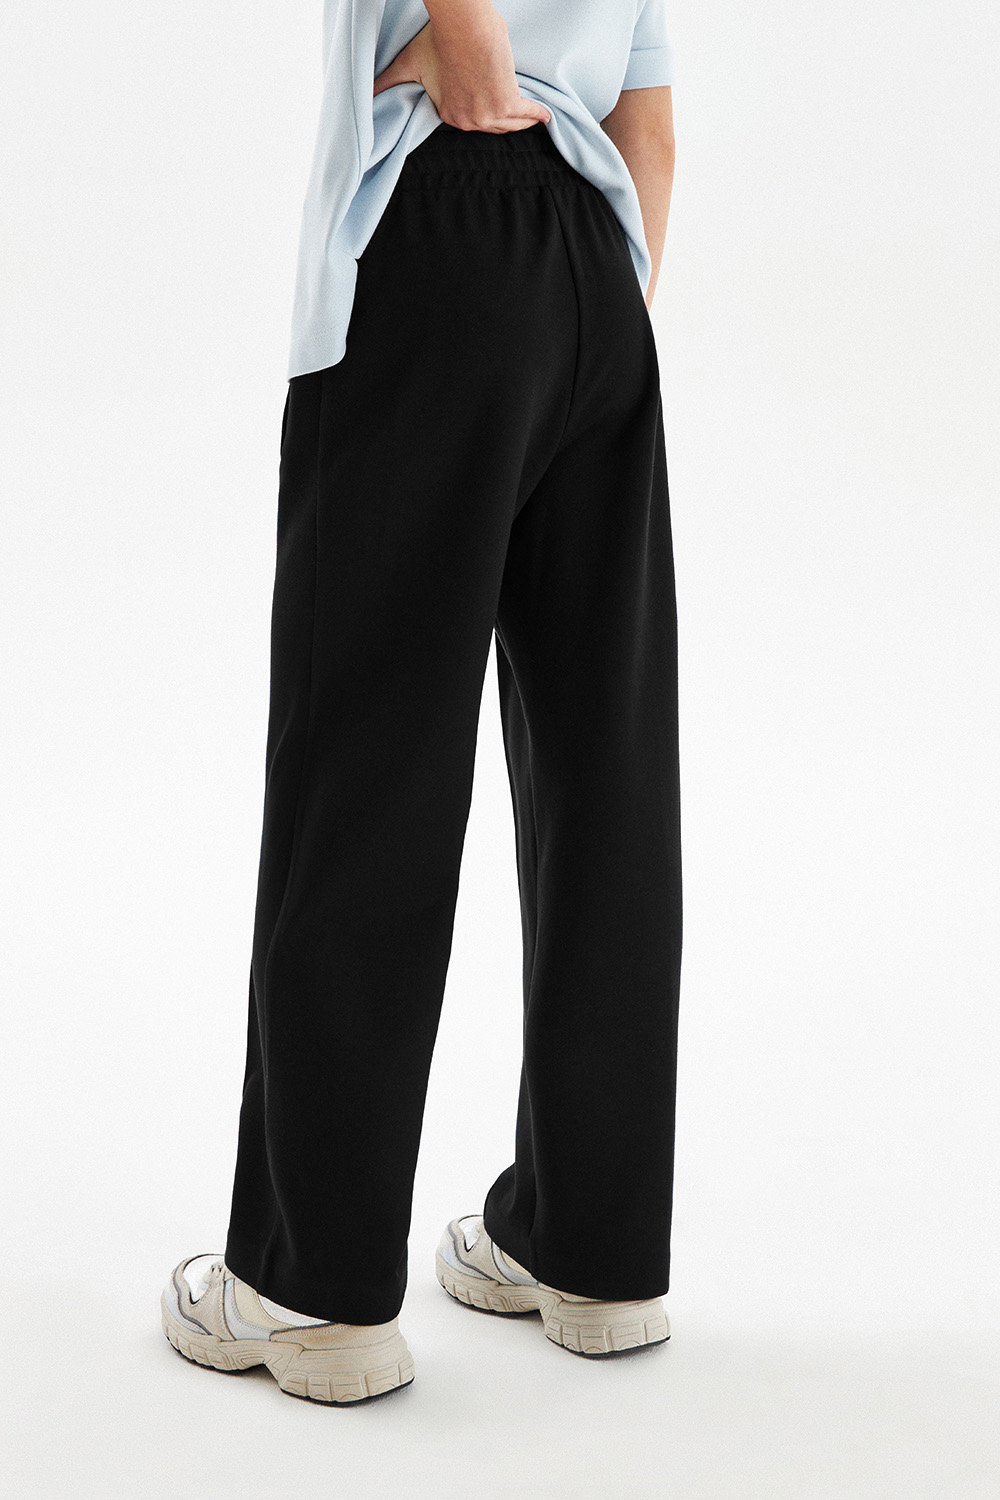 Трикотажные широкие брюки с эластичной талией (SSFSG-328-26037-112) Silver Spoon